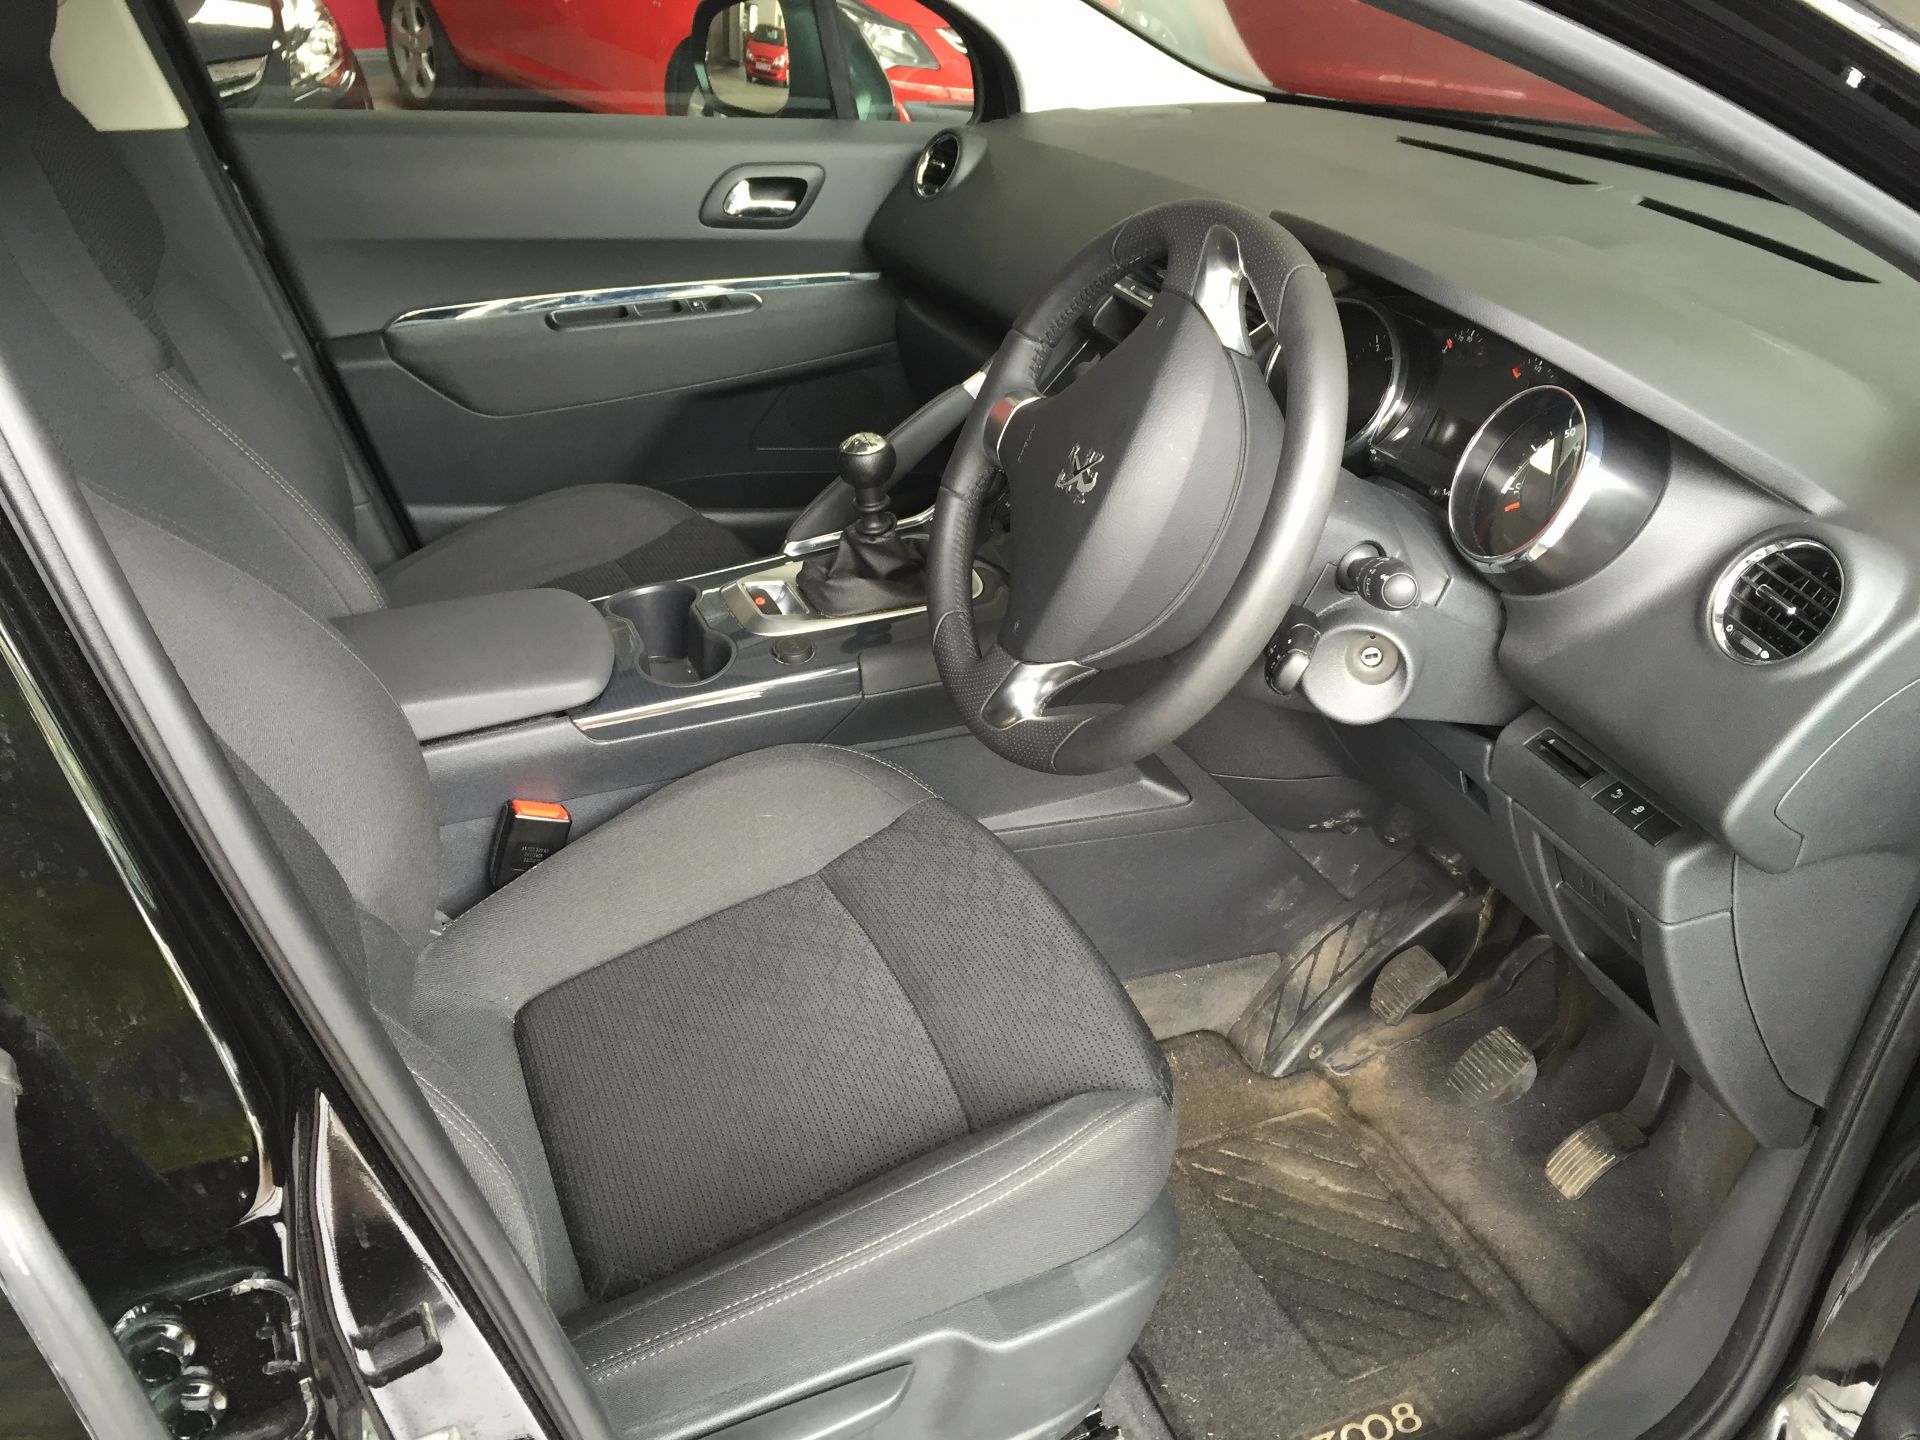 Peugeot 3008 Active HDI 5 Door Hatchback Date First Registered: 30/06/2015 Registration: YF15 NNA - Image 4 of 5